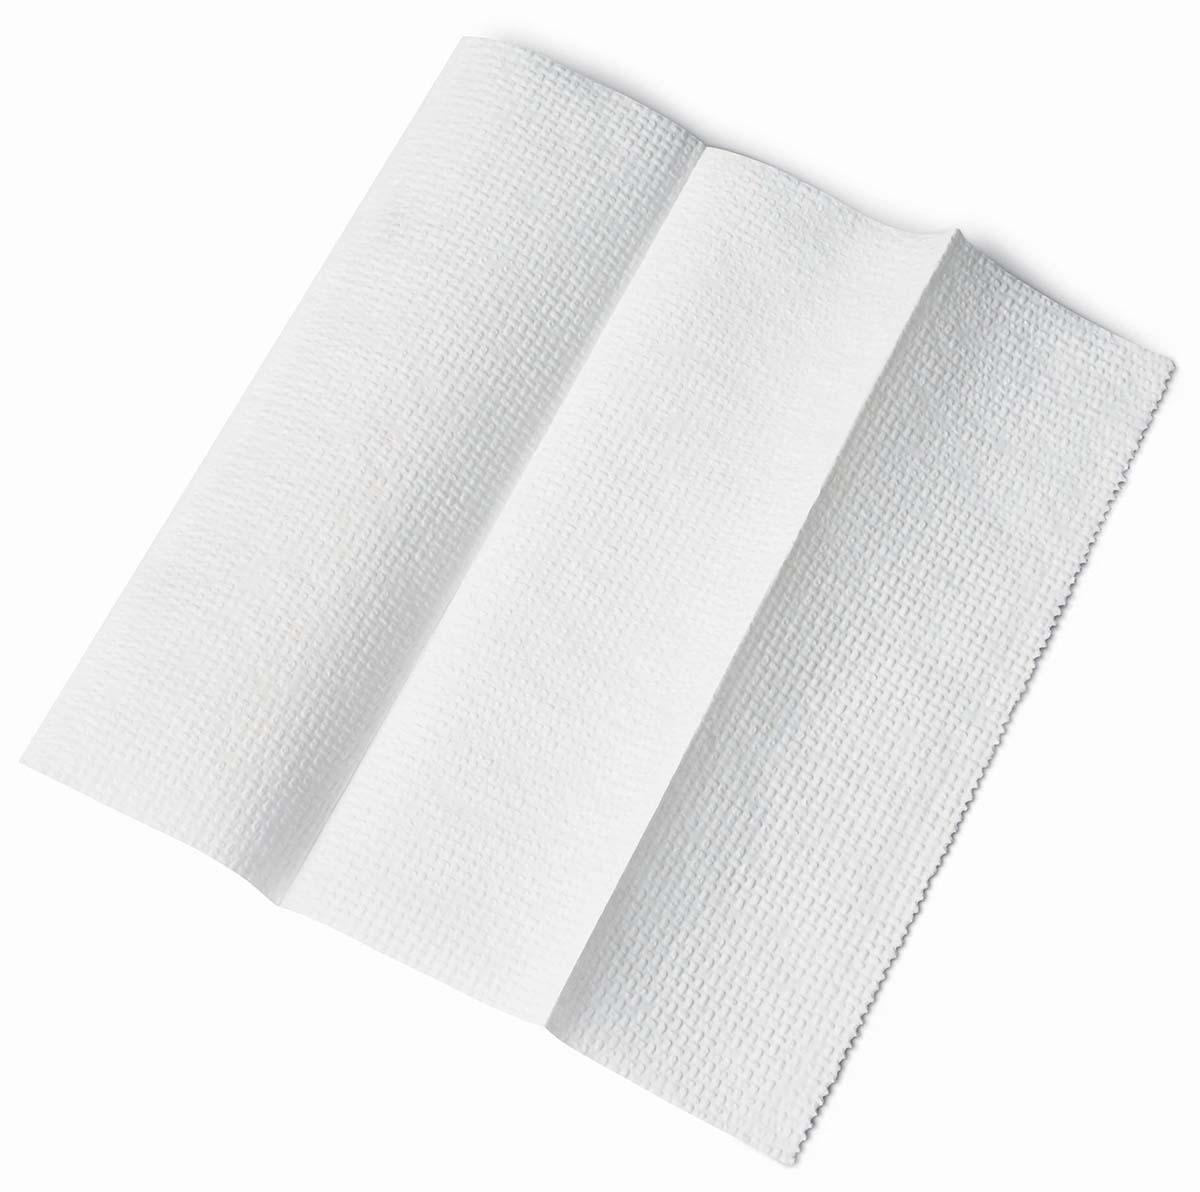 Бумажное полотенце перфорация. Multifold Towel 16 250 (4000cs). Flora дисп для z салфеток Fold paper Towel 300ш 1/12ш. Towel бумага. Хлопчатая бумага полотенце.